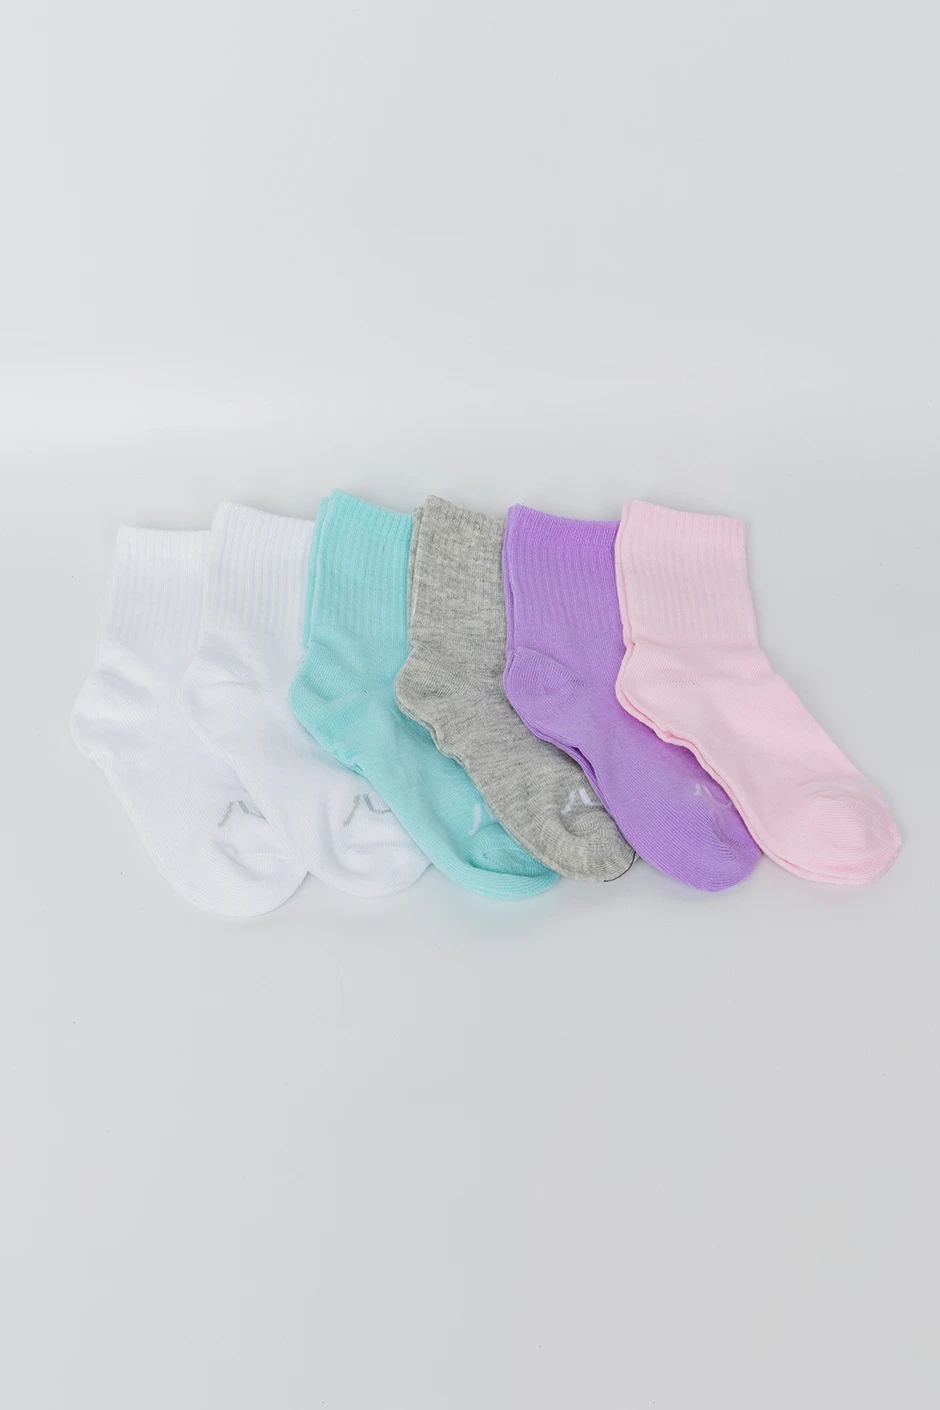 Kids Rainbow Socks